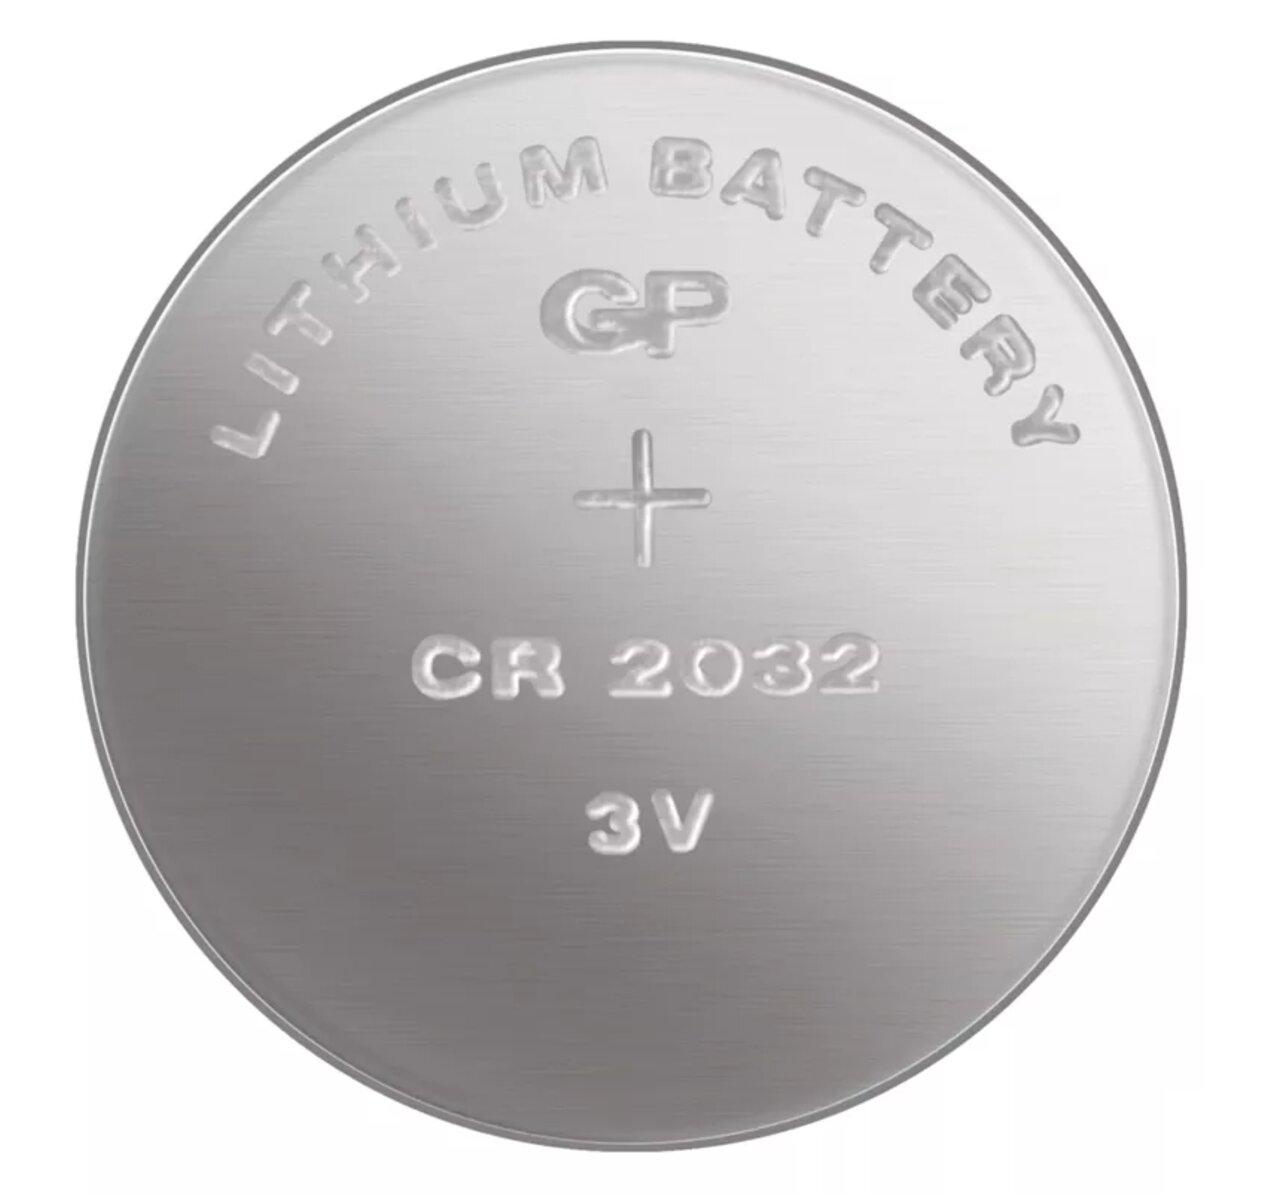 Batéria CR 2032 3V/220mAh GP obj.č. B1532                                       